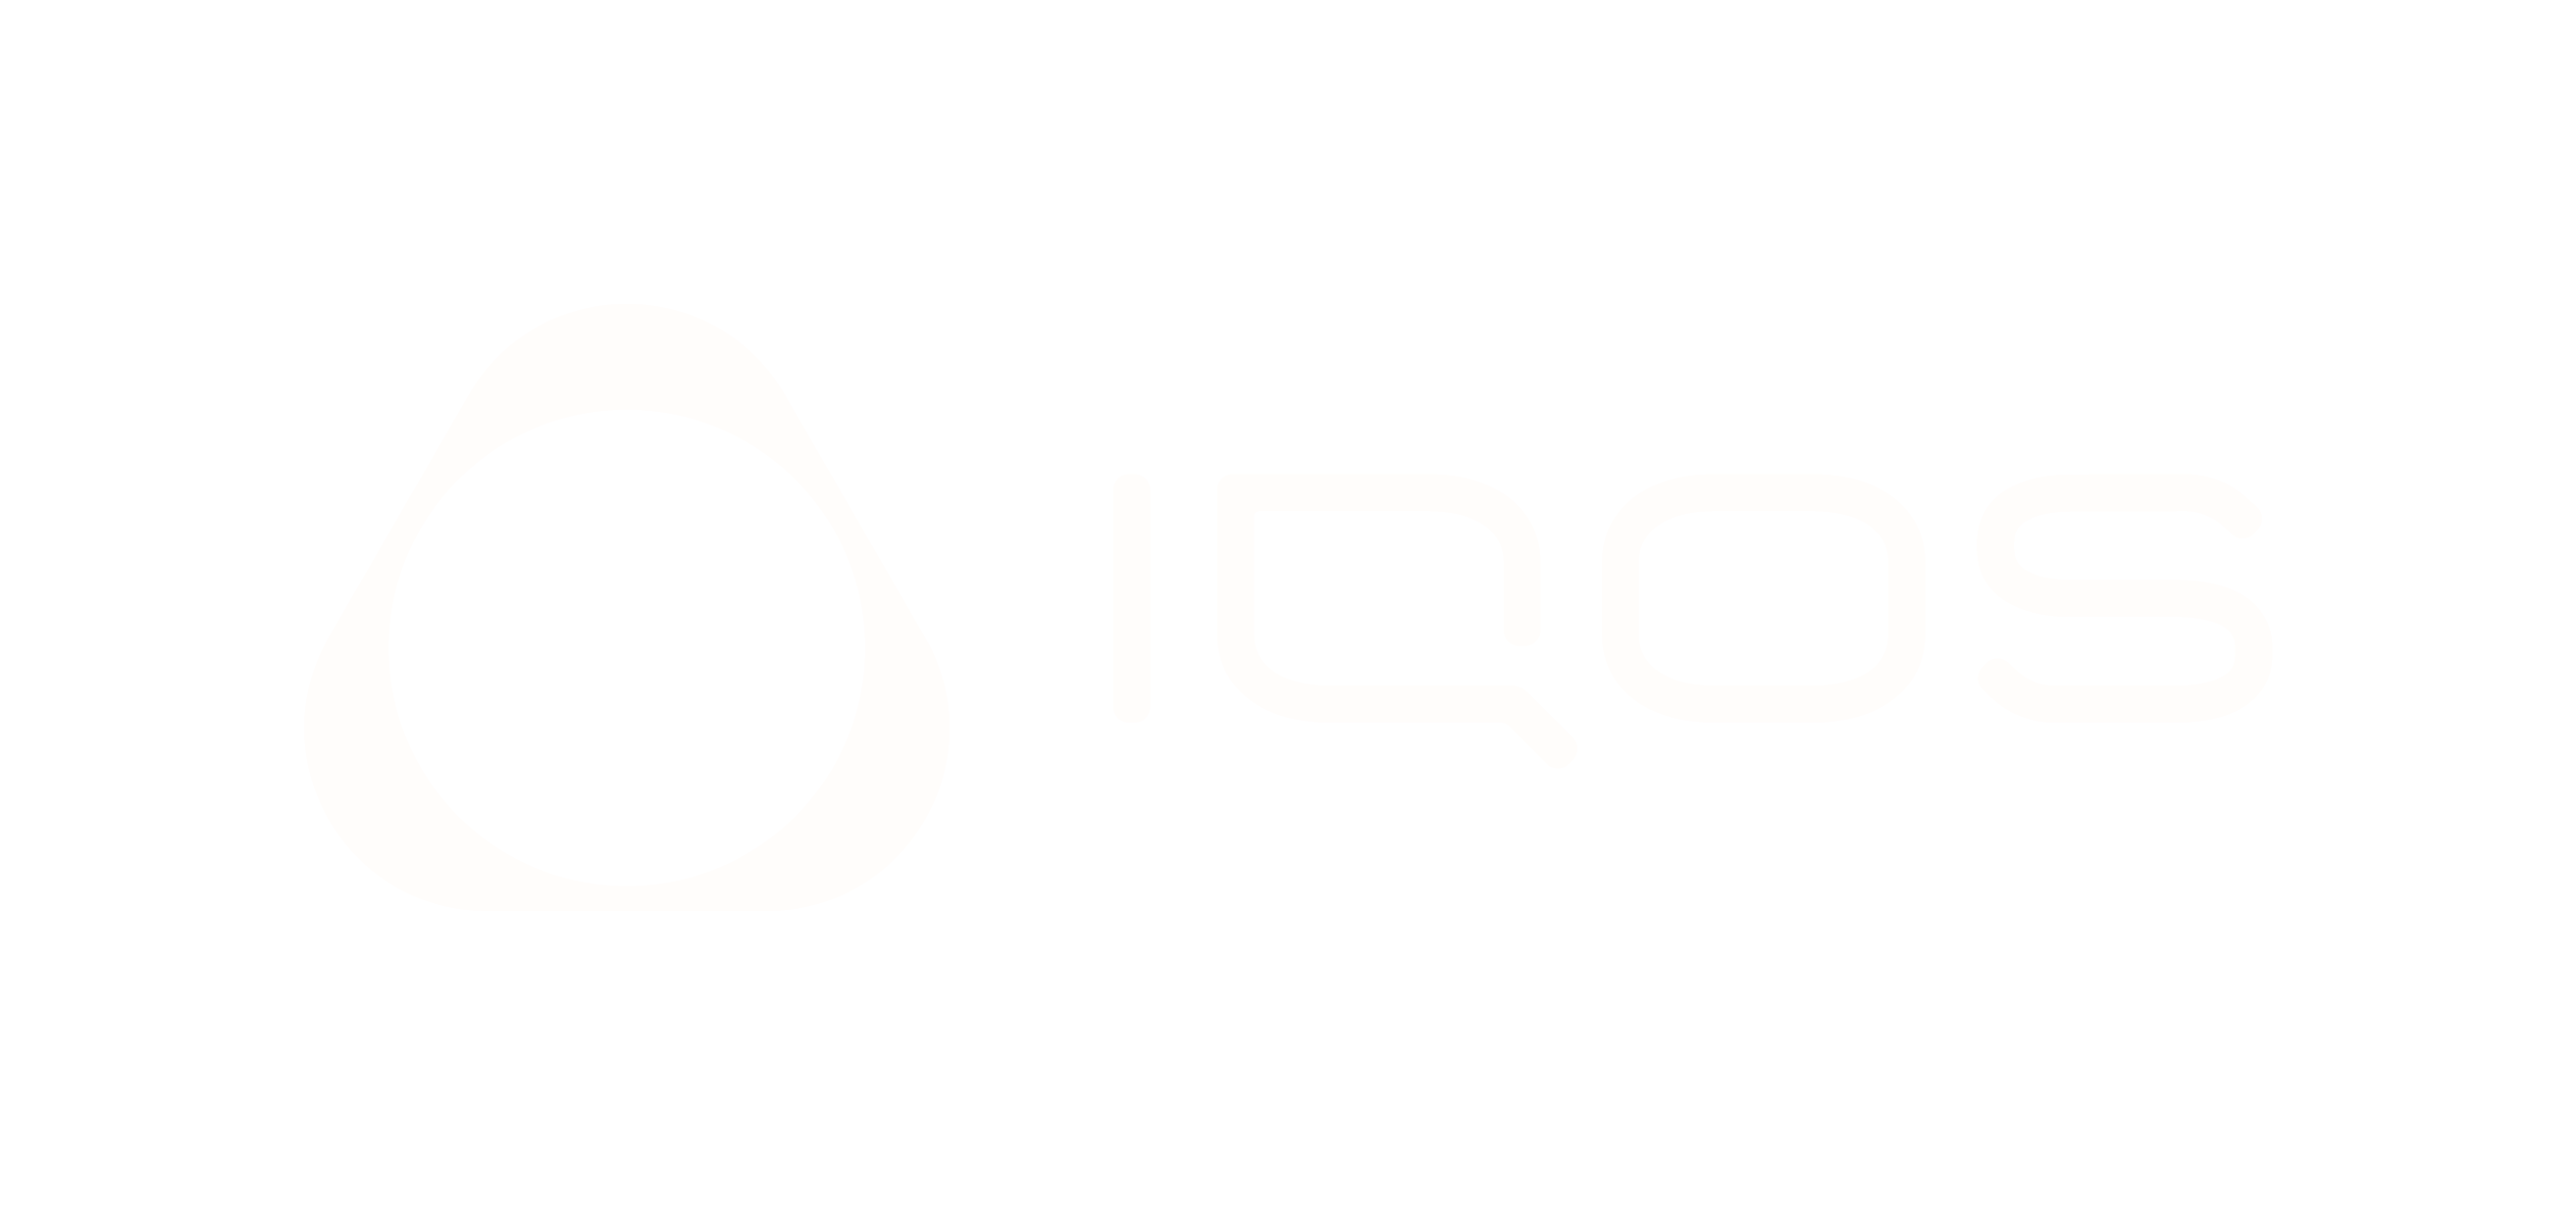 IQOS logo